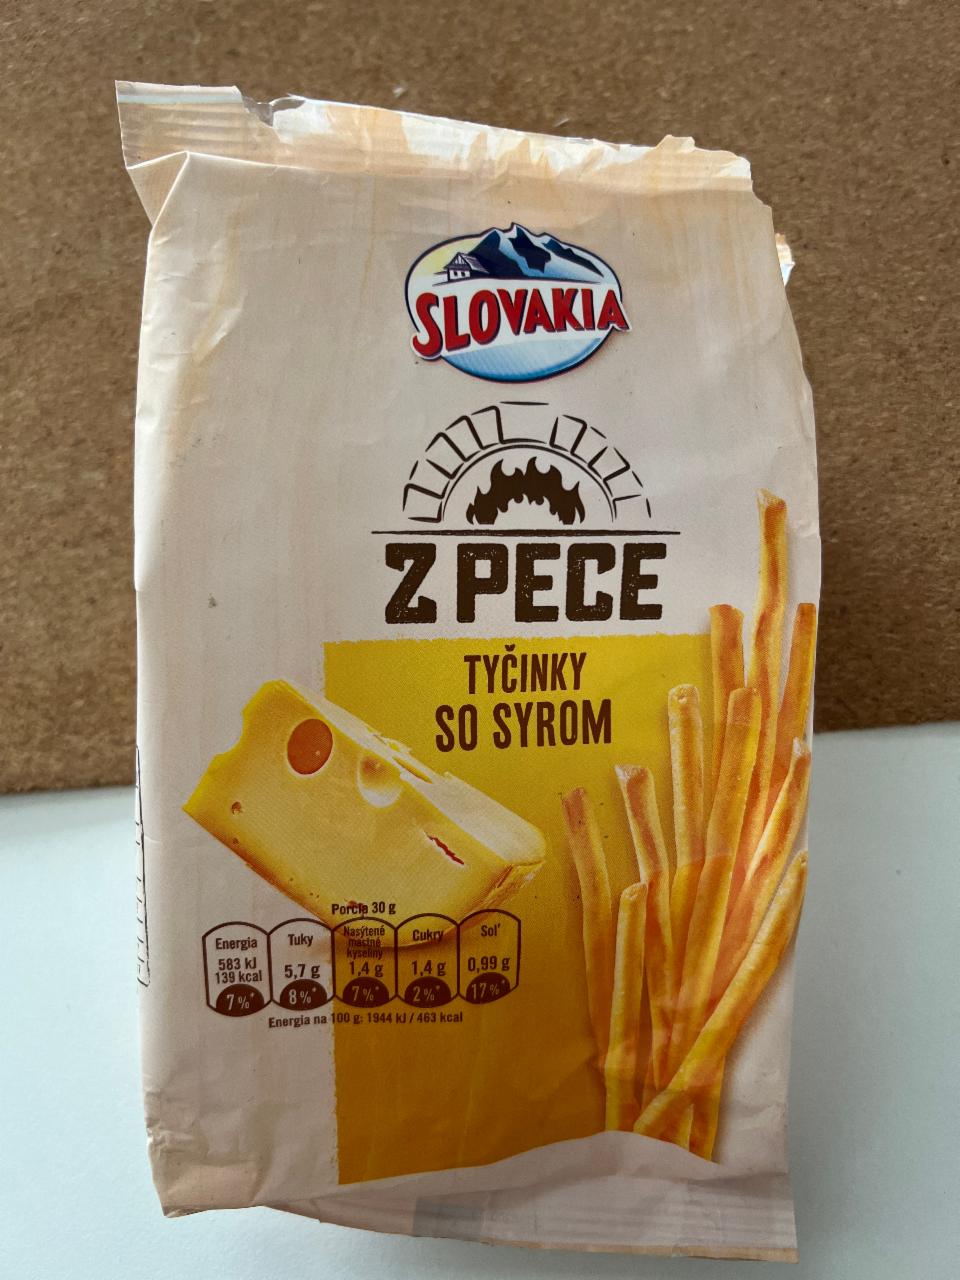 Фото - хлебные палочки со вкусом сыра Slovakia